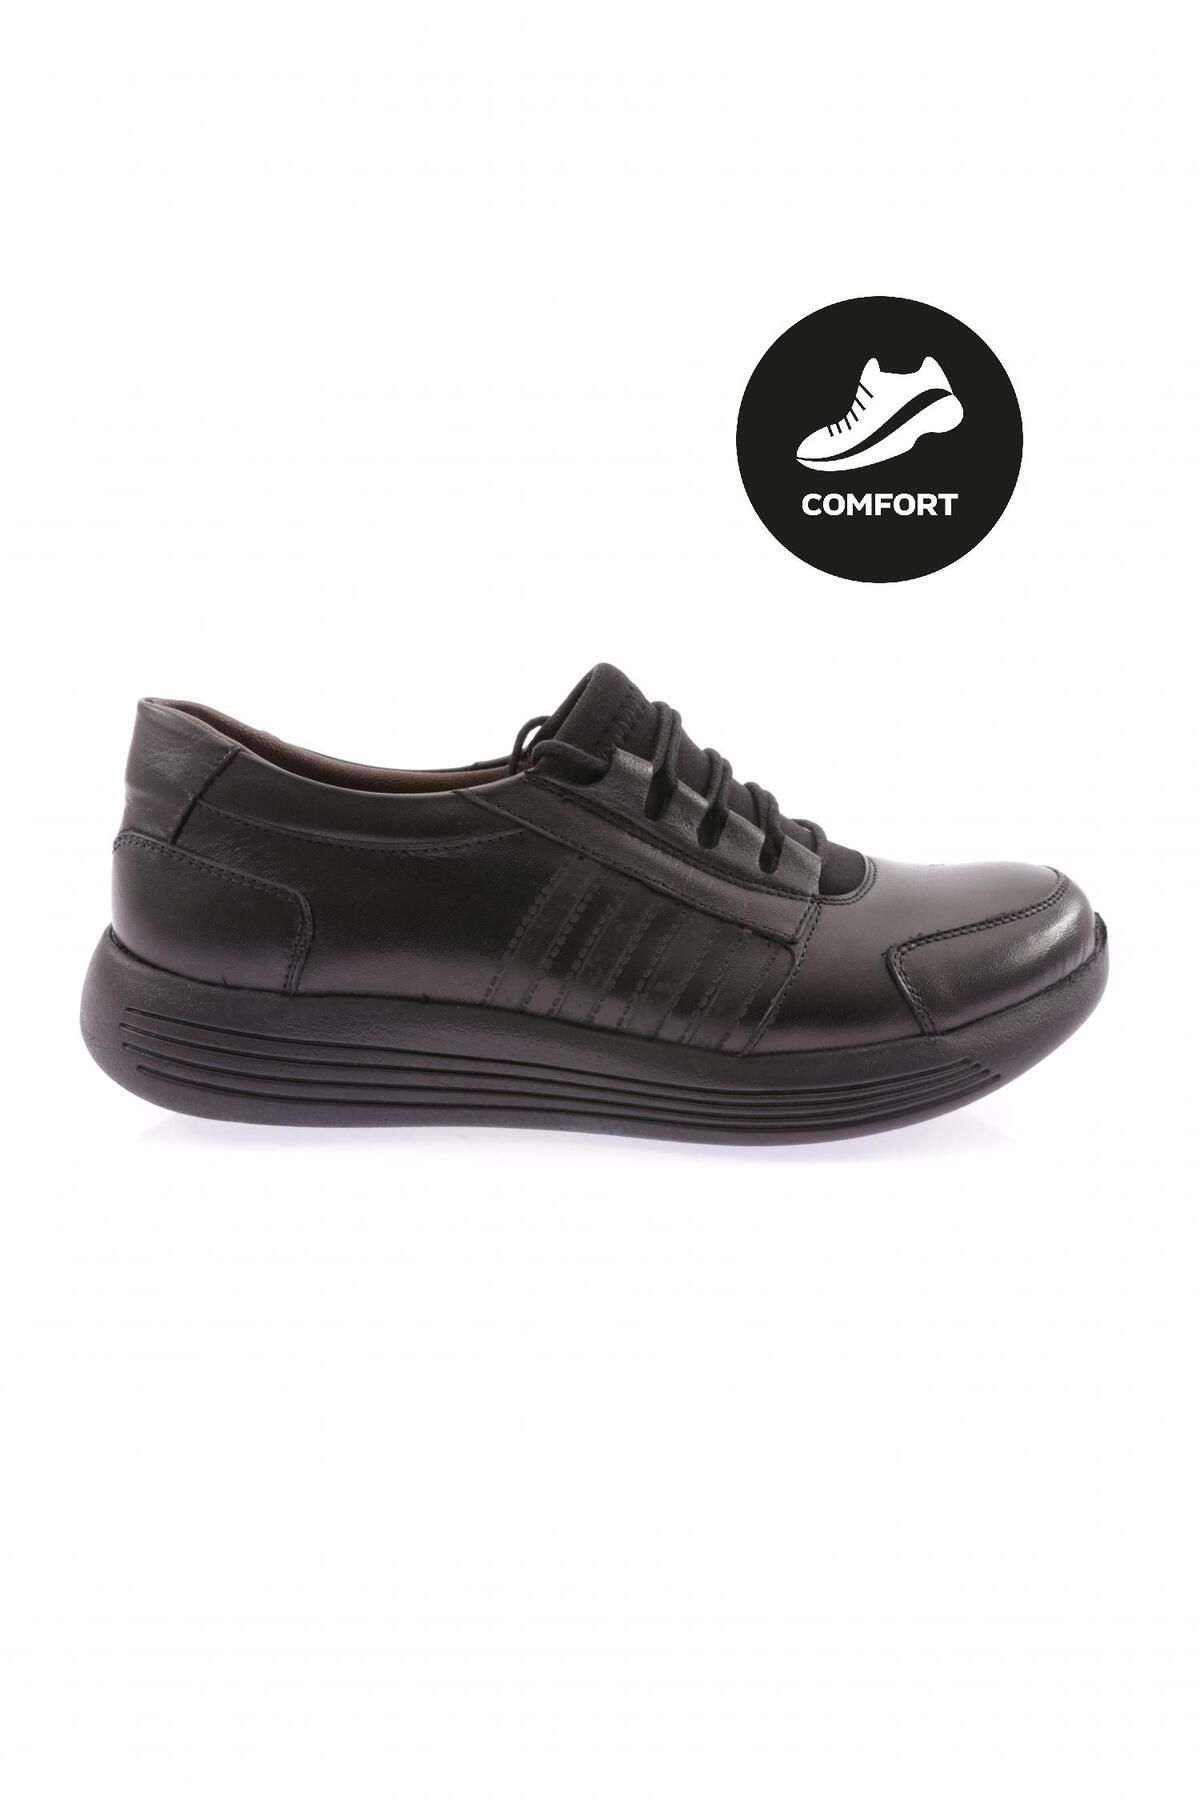 Dgn 1045-23y Kadin Dolgu Taban Lastik Bağcikliı Comfort Ayakkabı